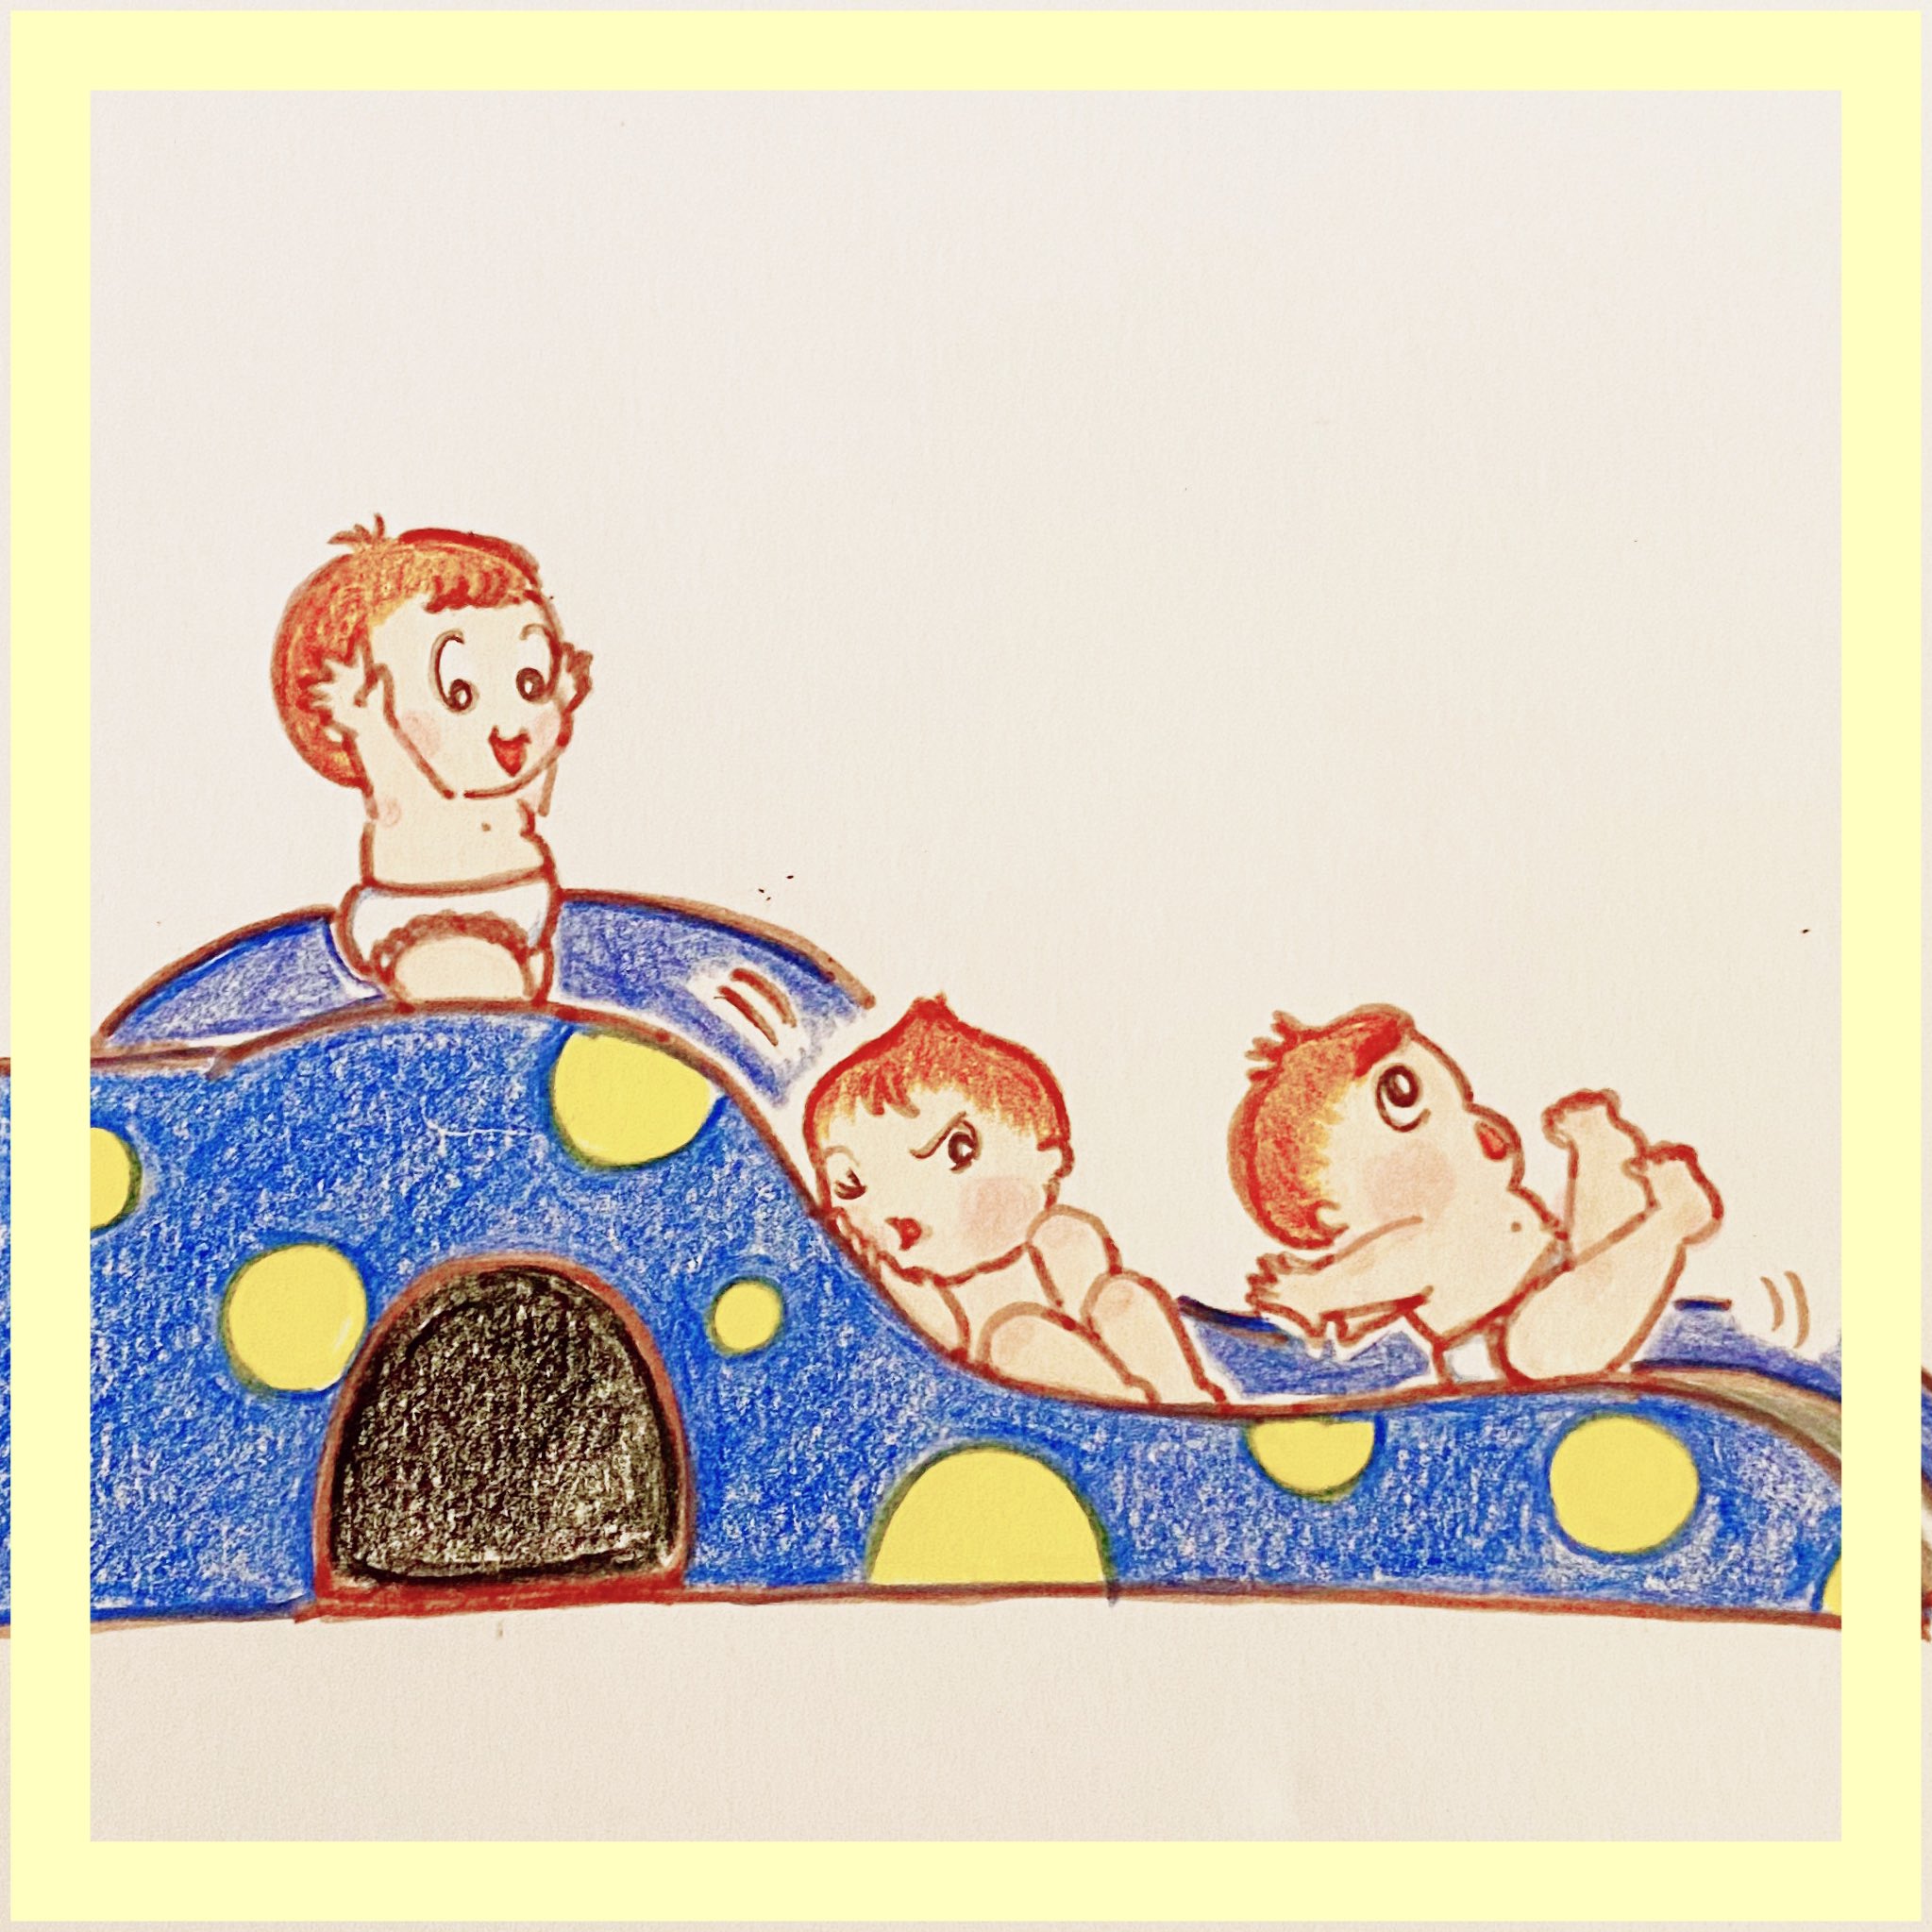 花子3児ママ イラストレーター 赤ちゃんと滑り台 今イラストキャンペーン中 Dmで受付中 ゆるかわイラスト ほのぼのイラスト イラスト かわいいイラスト お絵描き イラストレーターと繋がりたい 手描きイラスト 滑り台 赤ちゃんイラスト